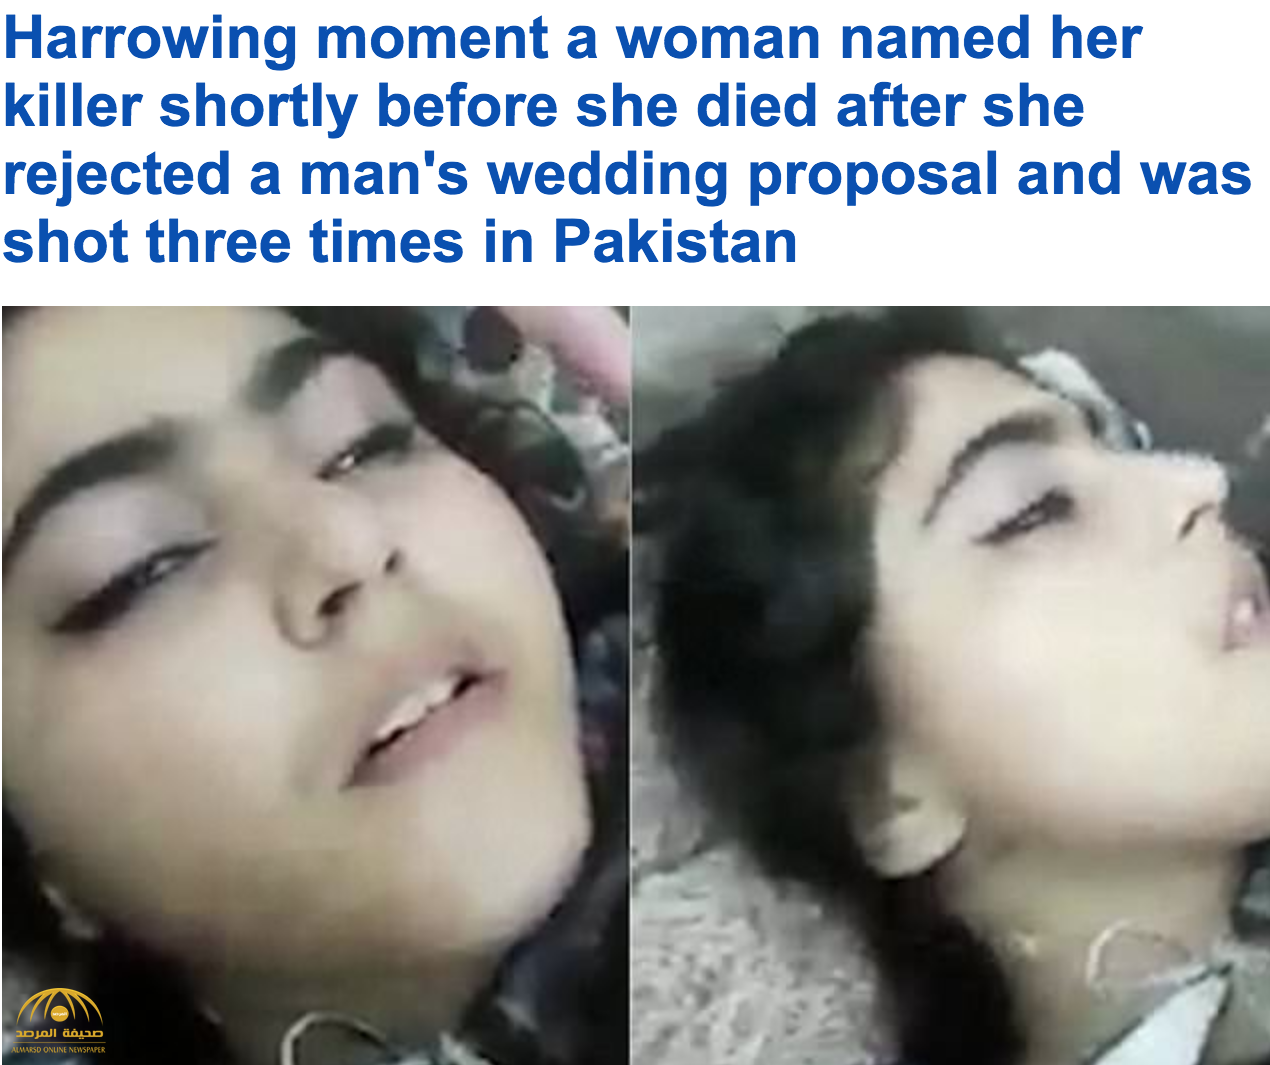 شاهد .. باكستانية تكشف عن اسم قاتلها وتلفظ أنفاسها الأخيرة